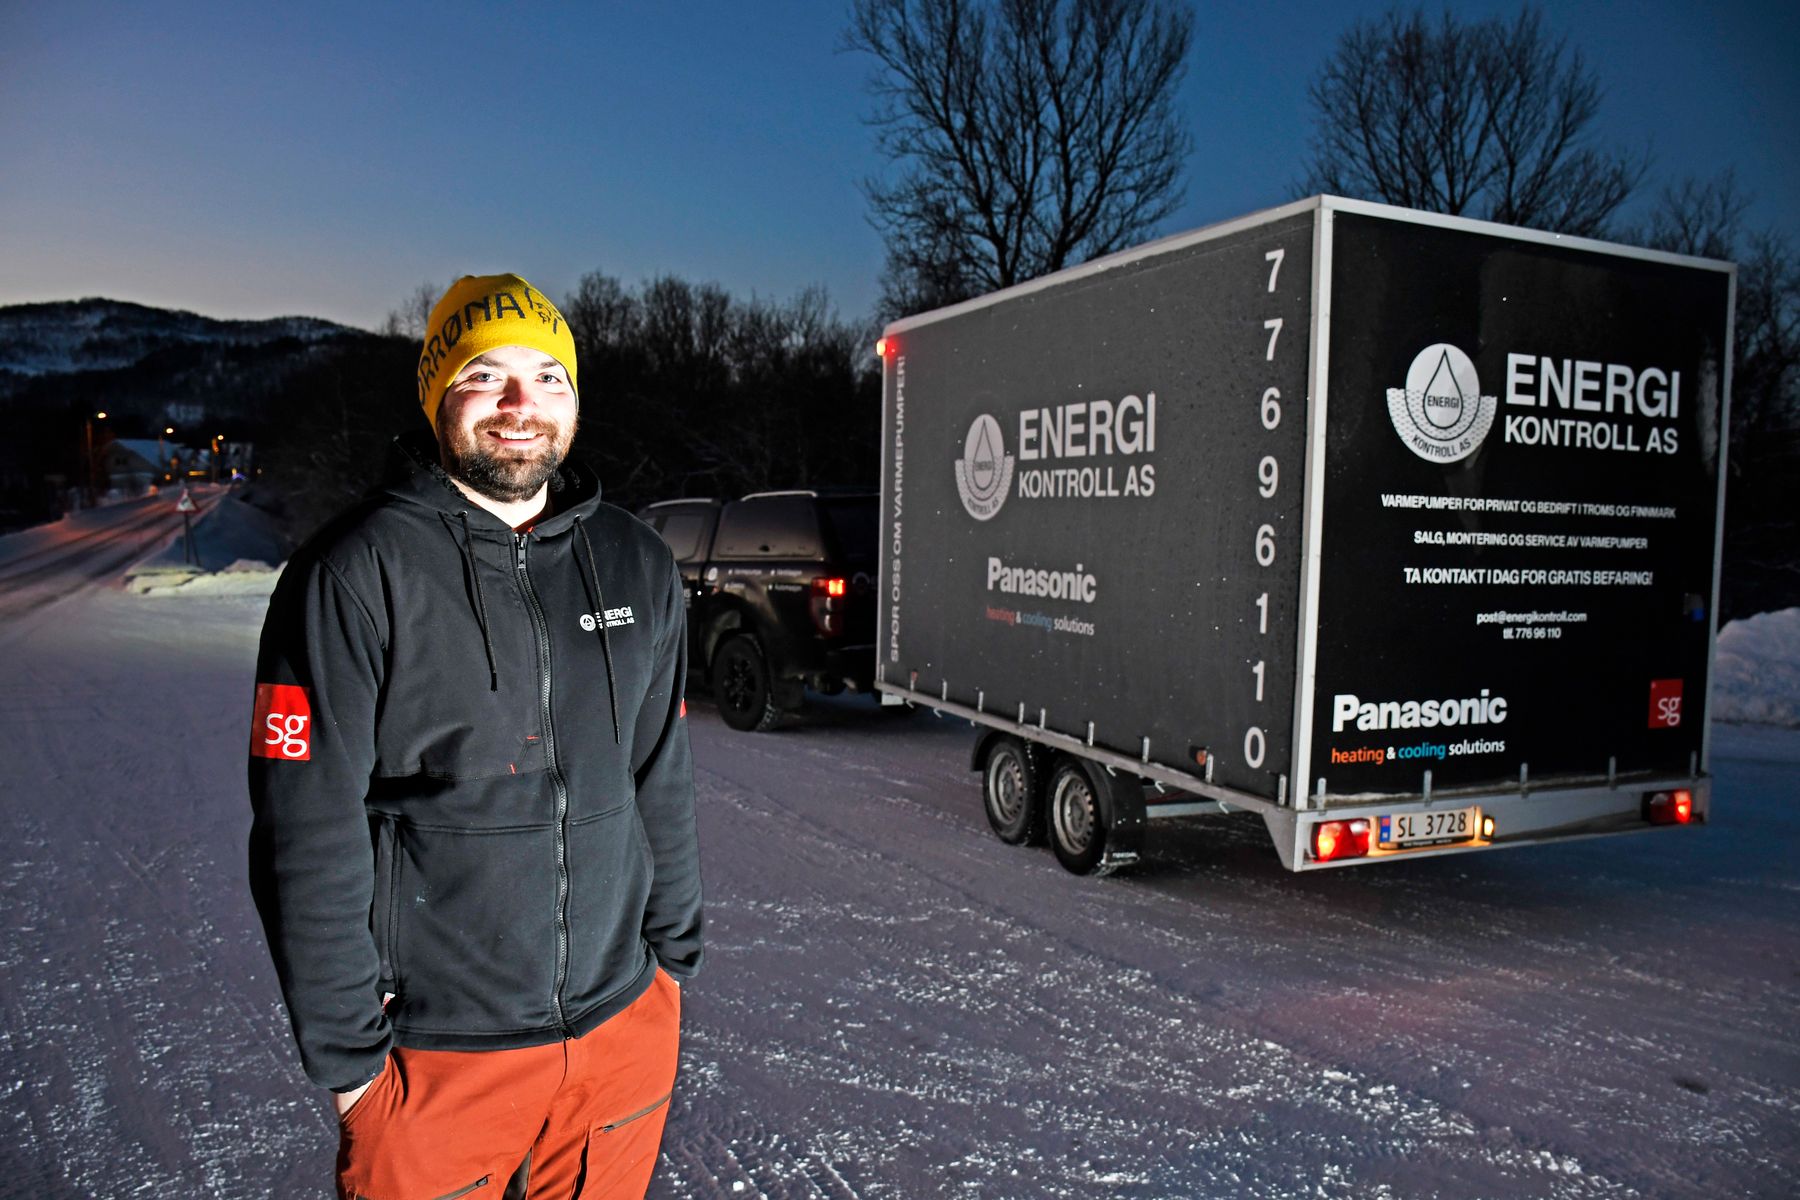 Pål-Oskar Guttormsen har i en årrekke montert varmepumper i Troms og Finnmark, her står han smilende ute en tidlig desemberdag foran tilhengeren sin som han bruker på å frakte varmepumpene.​​​​‌﻿‍﻿​‍​‍‌‍﻿﻿‌﻿​‍‌‍‍‌‌‍‌﻿‌‍‍‌‌‍﻿‍​‍​‍​﻿‍‍​‍​‍‌﻿​﻿‌‍​‌‌‍﻿‍‌‍‍‌‌﻿‌​‌﻿‍‌​‍﻿‍‌‍‍‌‌‍﻿﻿​‍​‍​‍﻿​​‍​‍‌‍‍​‌﻿​‍‌‍‌‌‌‍‌‍​‍​‍​﻿‍‍​‍​‍‌‍‍​‌﻿‌​‌﻿‌​‌﻿​​‌﻿​﻿​﻿‍‍​‍﻿﻿​‍﻿﻿‌‍‍‌‌﻿​﻿‌‍‍​‌‍​‌‌﻿‌‍‌﻿​﻿‌‍‍﻿‌﻿​‍‌‍​‌‌‍‌‍‌﻿‌​​‍﻿‍‌﻿​﻿‌‍​‌‌‍﻿‍‌‍‍‌‌﻿‌​‌﻿‍‌​‍﻿‍‌﻿​﻿‌﻿‌​‌﻿‌‌‌‍‌​‌‍‍‌‌‍﻿﻿​‍﻿﻿‌‍‍‌‌‍﻿‍‌﻿‌​‌‍‌‌‌‍﻿‍‌﻿‌​​‍﻿﻿‌‍‌‌‌‍‌​‌‍‍‌‌﻿‌​​‍﻿﻿‌‍﻿‌‌‍﻿﻿‌‍‌​‌‍‌‌​﻿﻿‌‌﻿​​‌﻿​‍‌‍‌‌‌﻿​﻿‌‍‌‌‌‍﻿‍‌﻿‌​‌‍​‌‌﻿‌​‌‍‍‌‌‍﻿﻿‌‍﻿‍​﻿‍﻿‌‍‍‌‌‍‌​​﻿﻿‌‌‍​‌‌‍‌​​﻿‍​‌‍‌​​﻿‌‍​﻿‌‍​﻿​﻿‌‍​‌​‍﻿‌‌‍‌​​﻿‌﻿​﻿‌‌​﻿​​​‍﻿‌​﻿‌​‌‍​﻿​﻿‌‍​﻿‌﻿​‍﻿‌‌‍​‍​﻿‌‌‌‍‌‍​﻿‌​​‍﻿‌‌‍‌​​﻿‍‌‌‍‌​​﻿‌﻿​﻿‌‌​﻿​﻿​﻿‌﻿​﻿‌﻿‌‍​﻿​﻿​﻿‌‍​‍‌‍‌‌​﻿‍﻿‌﻿‌​‌﻿‍‌‌﻿​​‌‍‌‌​﻿﻿‌‌‍​‌‌﻿​‍‌﻿‌​‌‍‍‌‌‍​﻿‌‍﻿​‌‍‌‌​﻿‍﻿‌﻿​​‌‍​‌‌﻿‌​‌‍‍​​﻿﻿‌‌‍‍‌‌‍﻿‌‌‍​‌‌‍‌﻿‌‍‌‌​‍﻿‍‌‍​‌‌‍﻿​‌﻿‌​​﻿﻿﻿‌‍​‍‌‍​‌‌﻿​﻿‌‍‌‌‌‌‌‌‌﻿​‍‌‍﻿​​﻿﻿‌‌‍‍​‌﻿‌​‌﻿‌​‌﻿​​‌﻿​﻿​‍‌‌​﻿​﻿‌​​‌​‍‌‌​﻿​‍‌​‌‍​‍‌‌​﻿​‍‌​‌‍‌‍‍‌‌﻿​﻿‌‍‍​‌‍​‌‌﻿‌‍‌﻿​﻿‌‍‍﻿‌﻿​‍‌‍​‌‌‍‌‍‌﻿‌​​‍﻿‍‌﻿​﻿‌‍​‌‌‍﻿‍‌‍‍‌‌﻿‌​‌﻿‍‌​‍﻿‍‌﻿​﻿‌﻿‌​‌﻿‌‌‌‍‌​‌‍‍‌‌‍﻿﻿​‍‌‍‌‍‍‌‌‍‌​​﻿﻿‌‌‍​‌‌‍‌​​﻿‍​‌‍‌​​﻿‌‍​﻿‌‍​﻿​﻿‌‍​‌​‍﻿‌‌‍‌​​﻿‌﻿​﻿‌‌​﻿​​​‍﻿‌​﻿‌​‌‍​﻿​﻿‌‍​﻿‌﻿​‍﻿‌‌‍​‍​﻿‌‌‌‍‌‍​﻿‌​​‍﻿‌‌‍‌​​﻿‍‌‌‍‌​​﻿‌﻿​﻿‌‌​﻿​﻿​﻿‌﻿​﻿‌﻿‌‍​﻿​﻿​﻿‌‍​‍‌‍‌‌​‍‌‍‌﻿‌​‌﻿‍‌‌﻿​​‌‍‌‌​﻿﻿‌‌‍​‌‌﻿​‍‌﻿‌​‌‍‍‌‌‍​﻿‌‍﻿​‌‍‌‌​‍‌‍‌﻿​​‌‍​‌‌﻿‌​‌‍‍​​﻿﻿‌‌‍‍‌‌‍﻿‌‌‍​‌‌‍‌﻿‌‍‌‌​‍﻿‍‌‍​‌‌‍﻿​‌﻿‌​​‍​‍‌﻿﻿‌